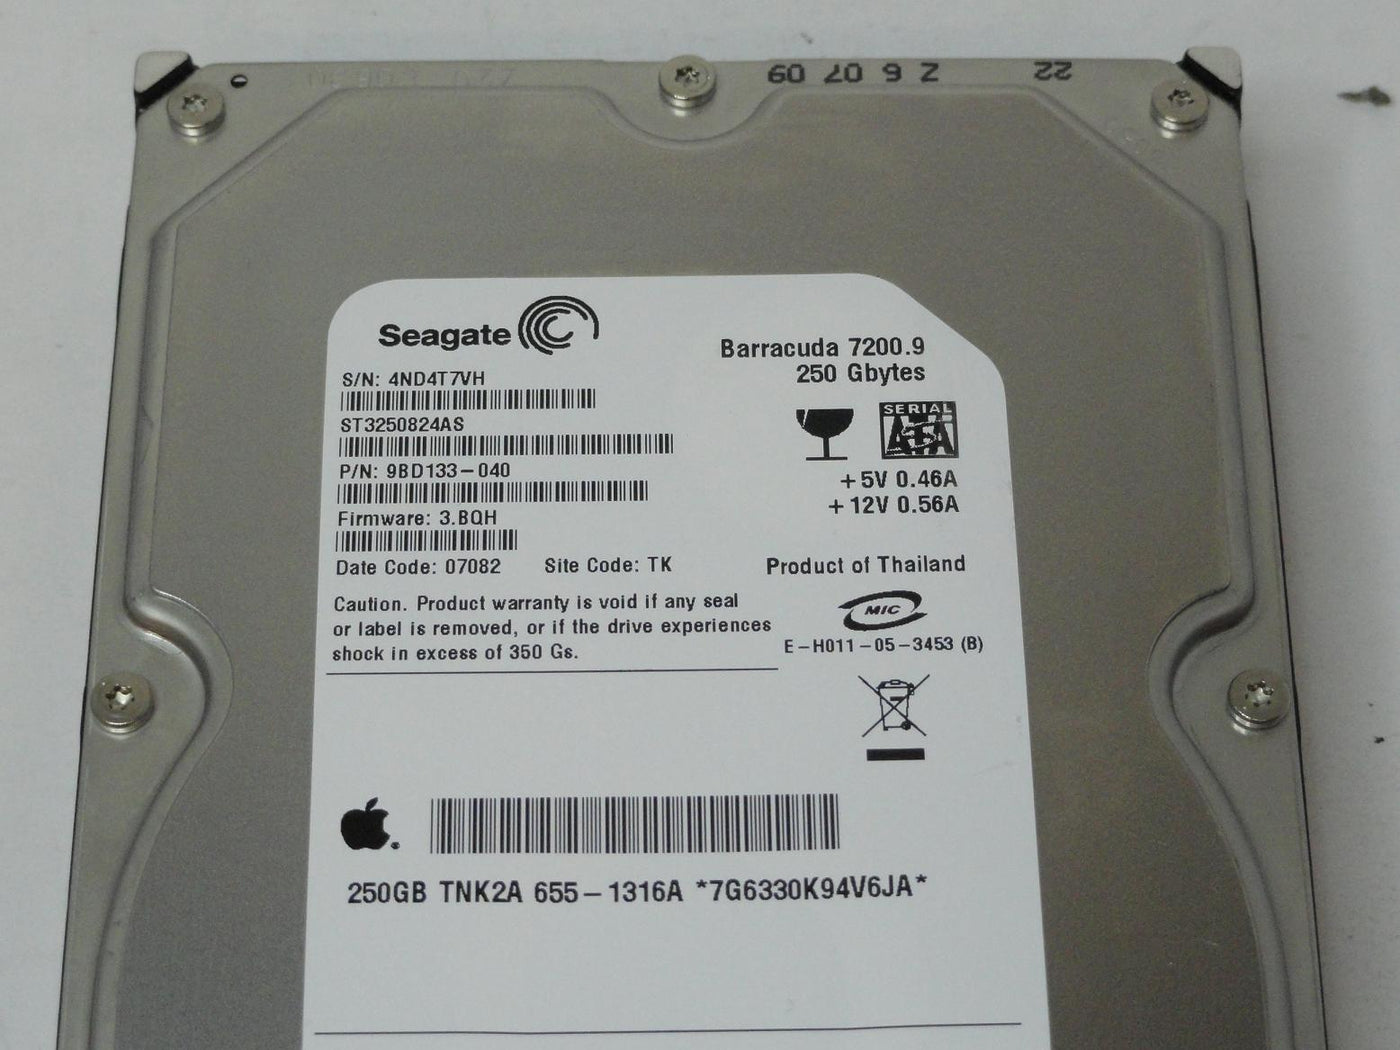 PR25112_9BD133-040_Seagate Apple 250GB SATA 7200rpm 3.5in HDD - Image3